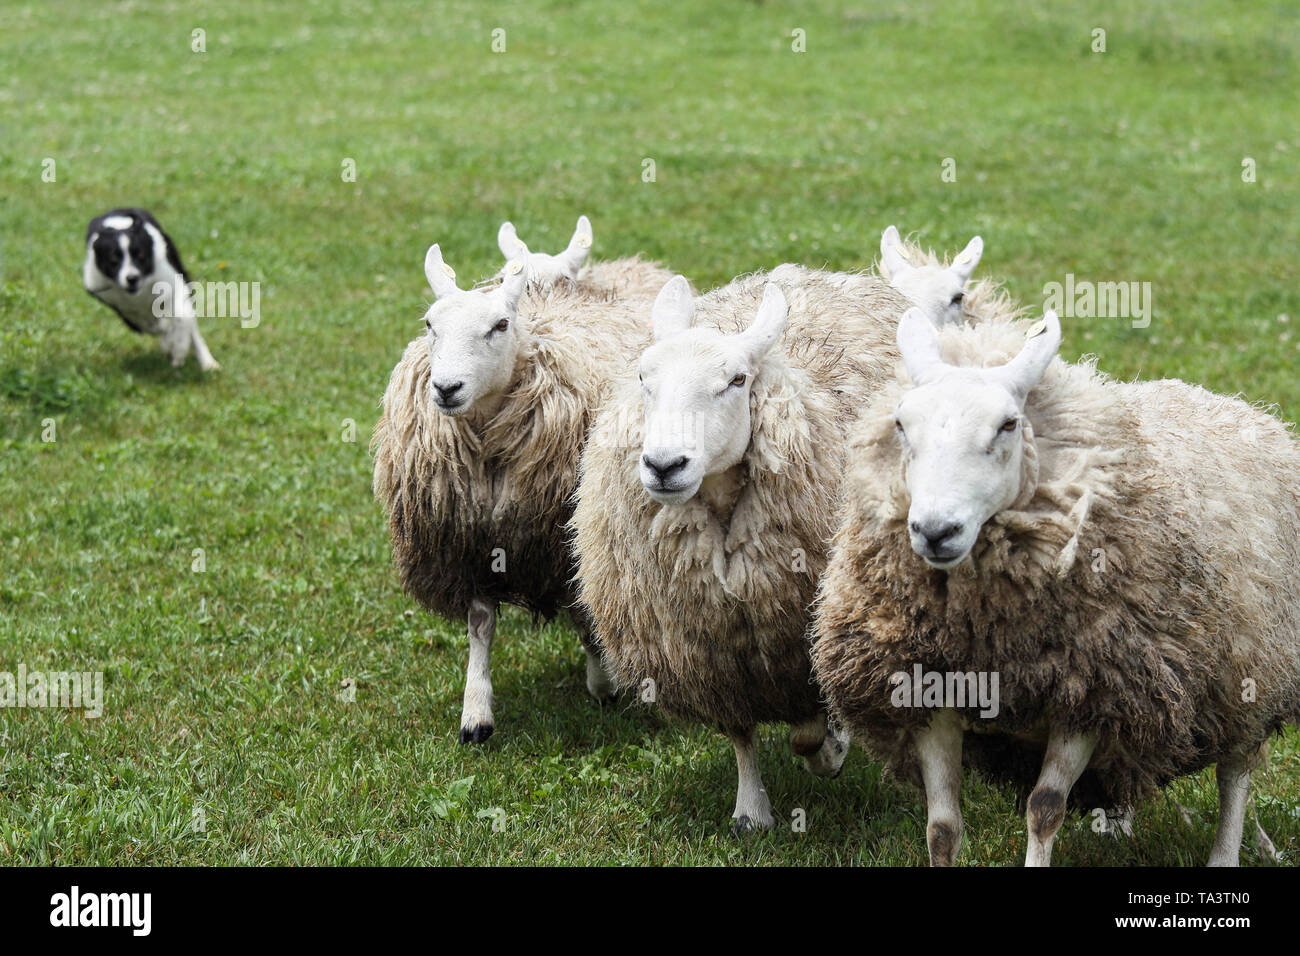 Herding dog and sheep Stock Photo